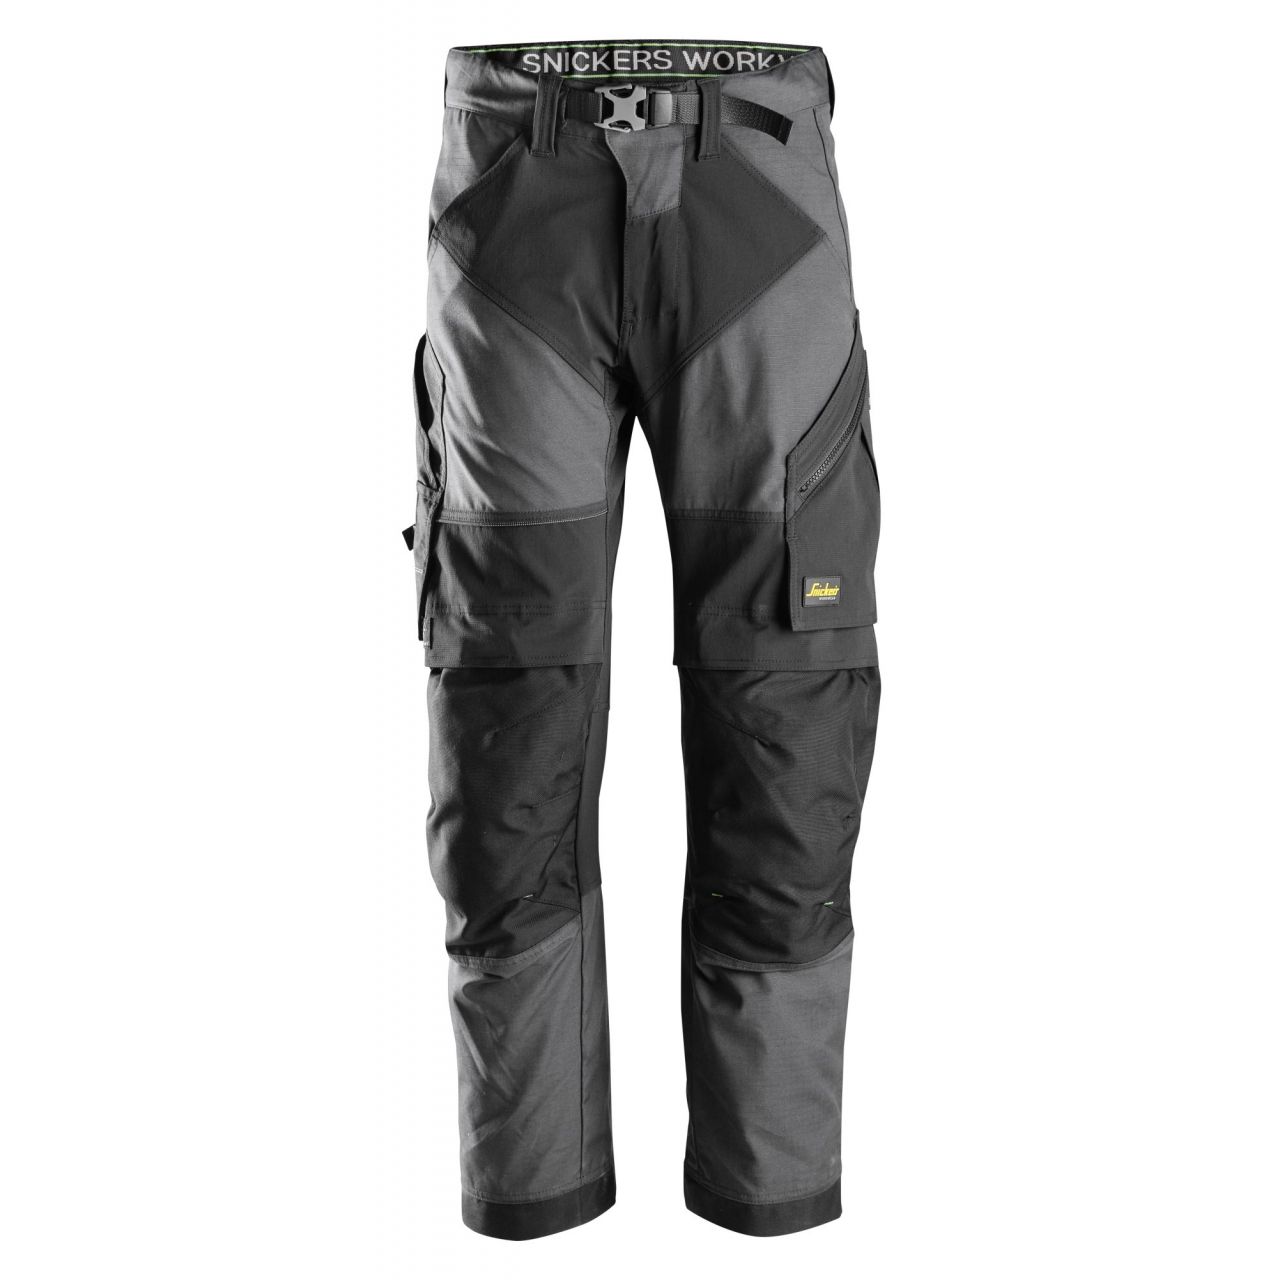 Pantalon FlexiWork+ gris acero-negro talla 200